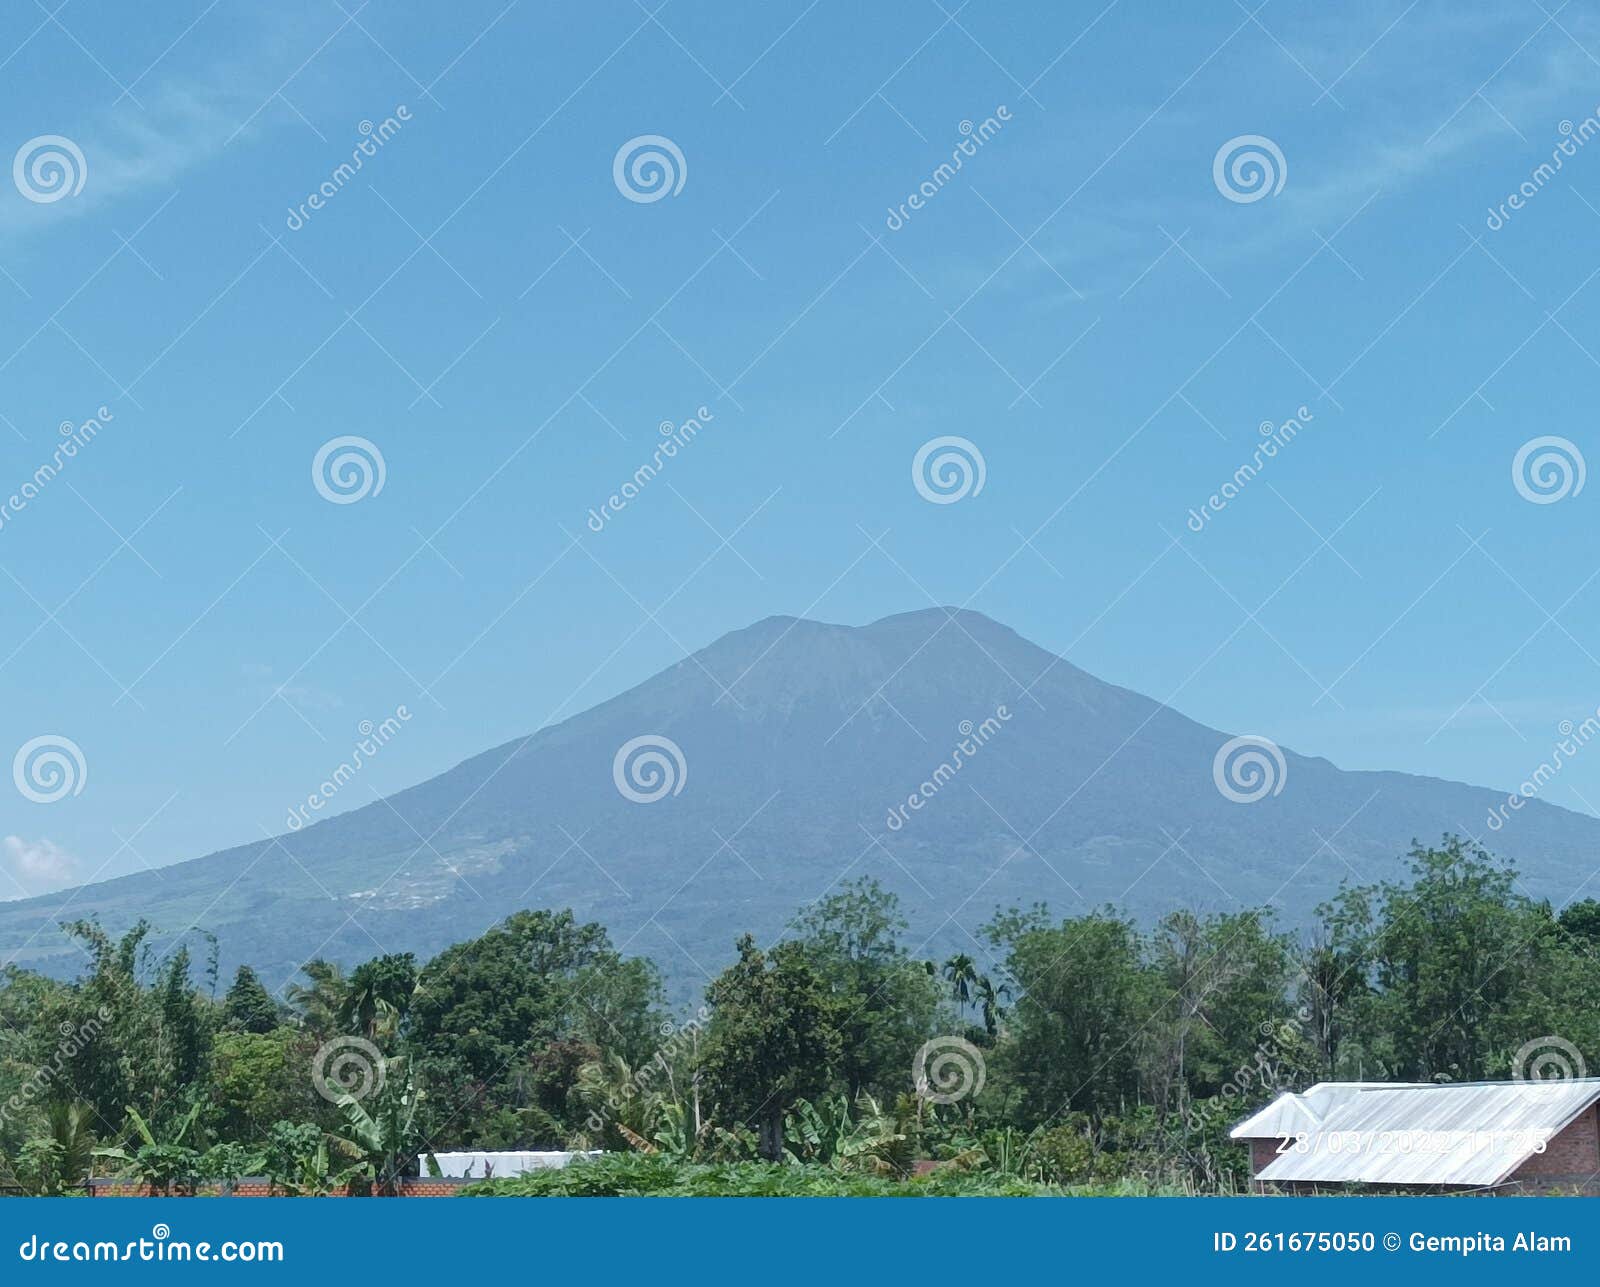 dempo mountain